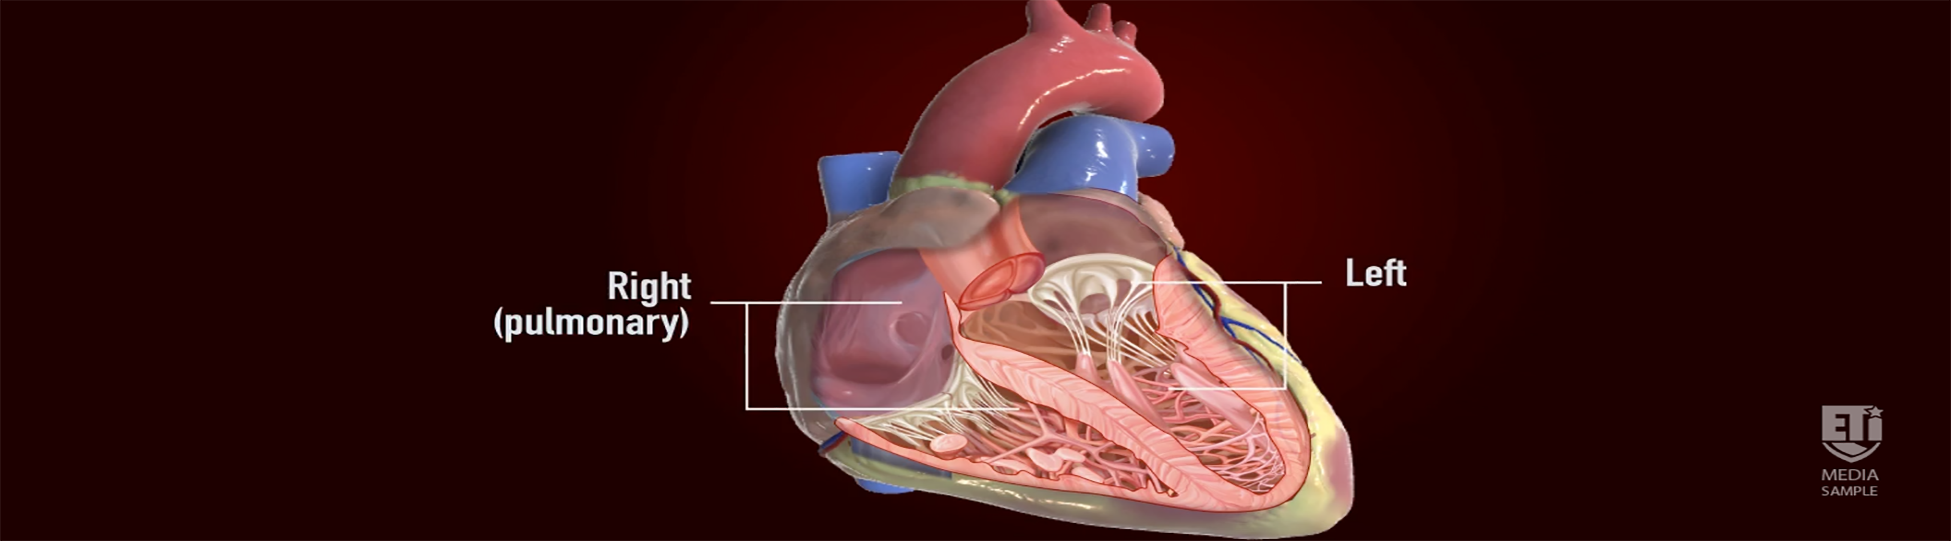 ETI heart graphic